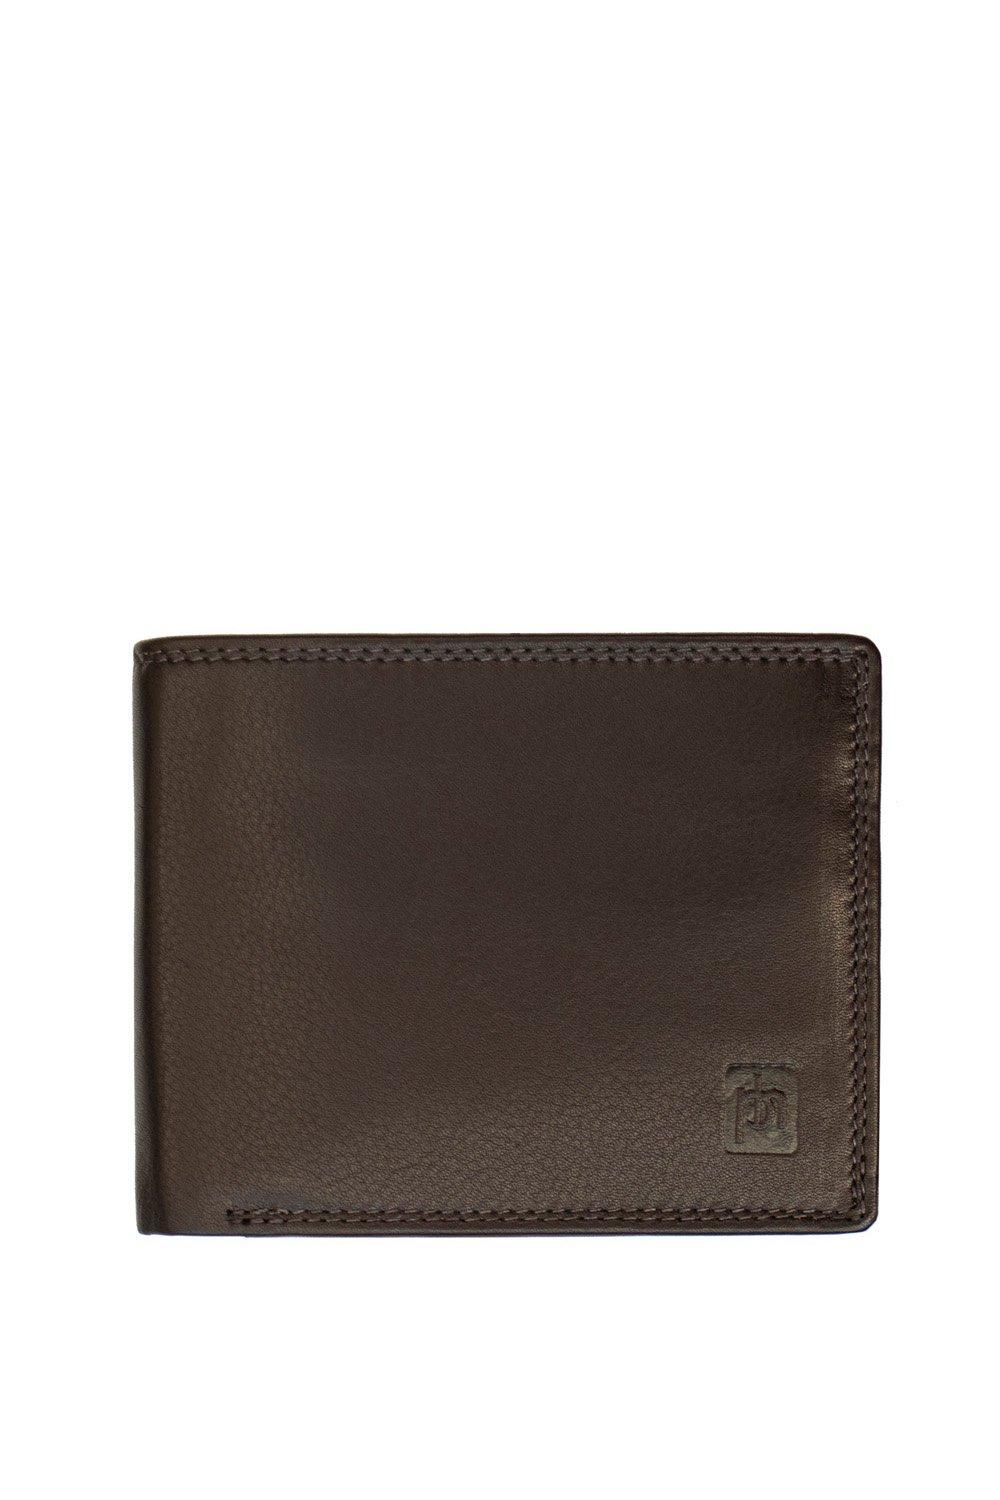 Кожаный кошелек Washington тройного сложения PRIMEHIDE, коричневый